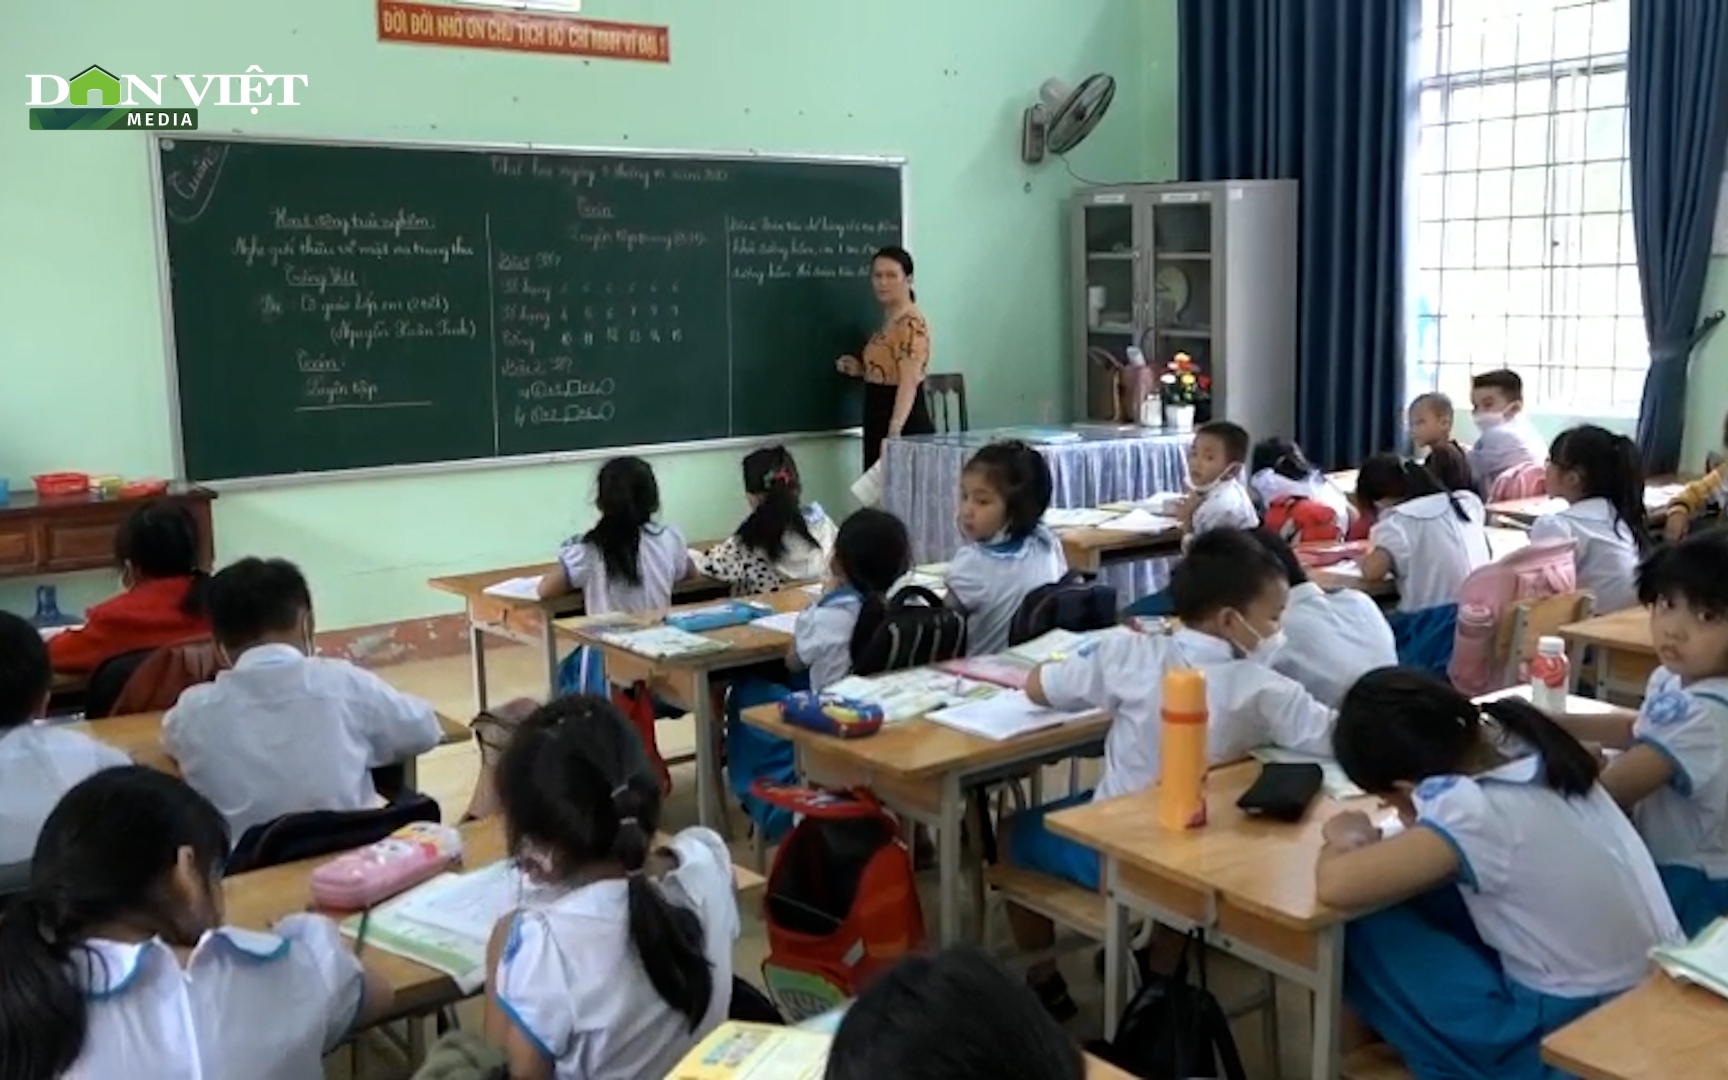 Quảng Ngãi: Giáo viên tiểu học phải dạy tăng cường do thiếu nhân sự nhưng không được chi trả vì "bí" nguồn chi